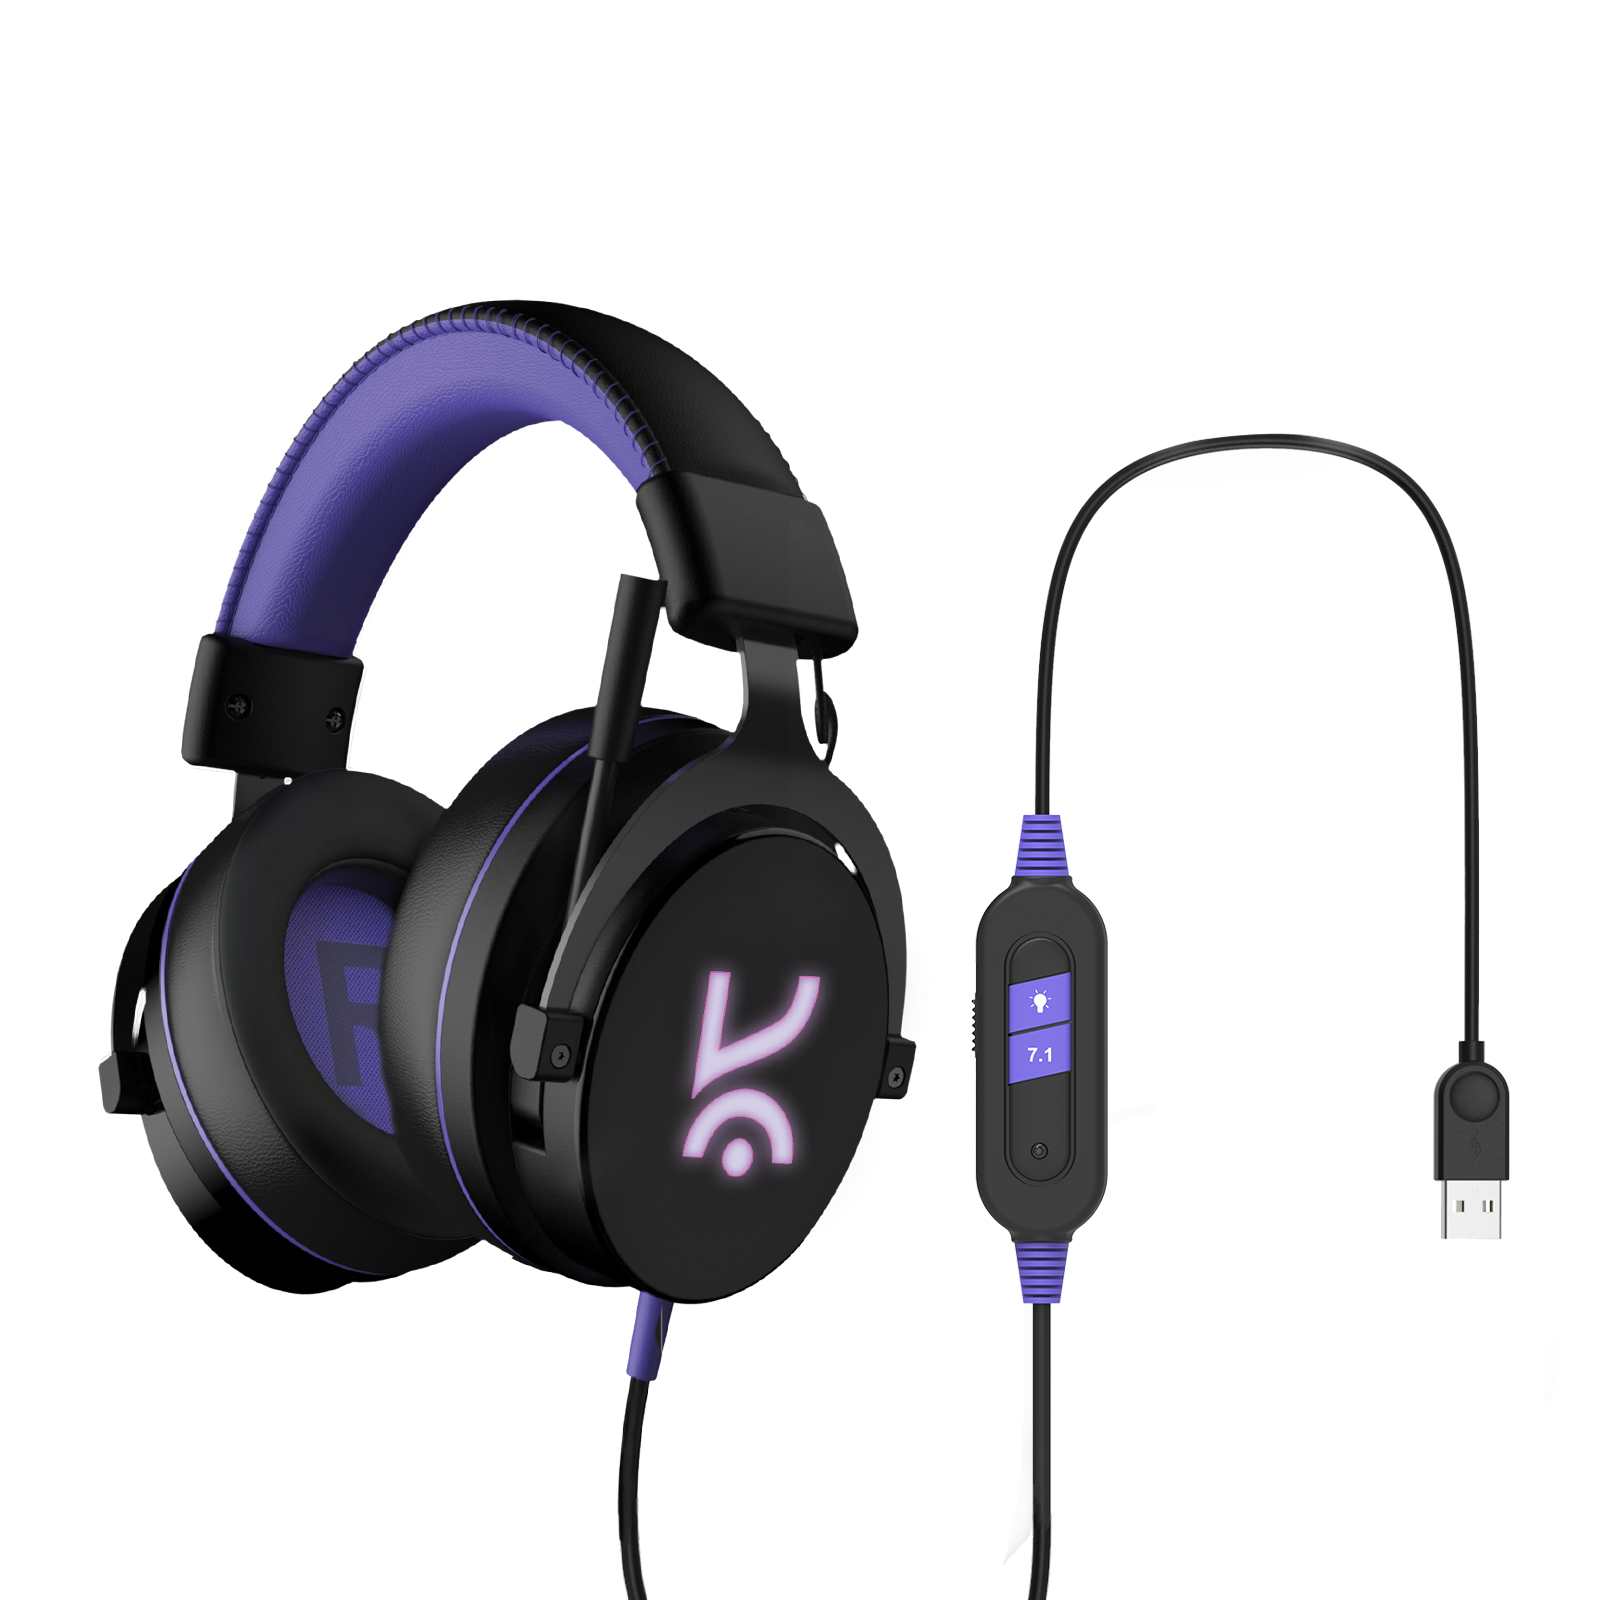 Beluga USB 7.1 surround sound wired gaming headphones Kreo